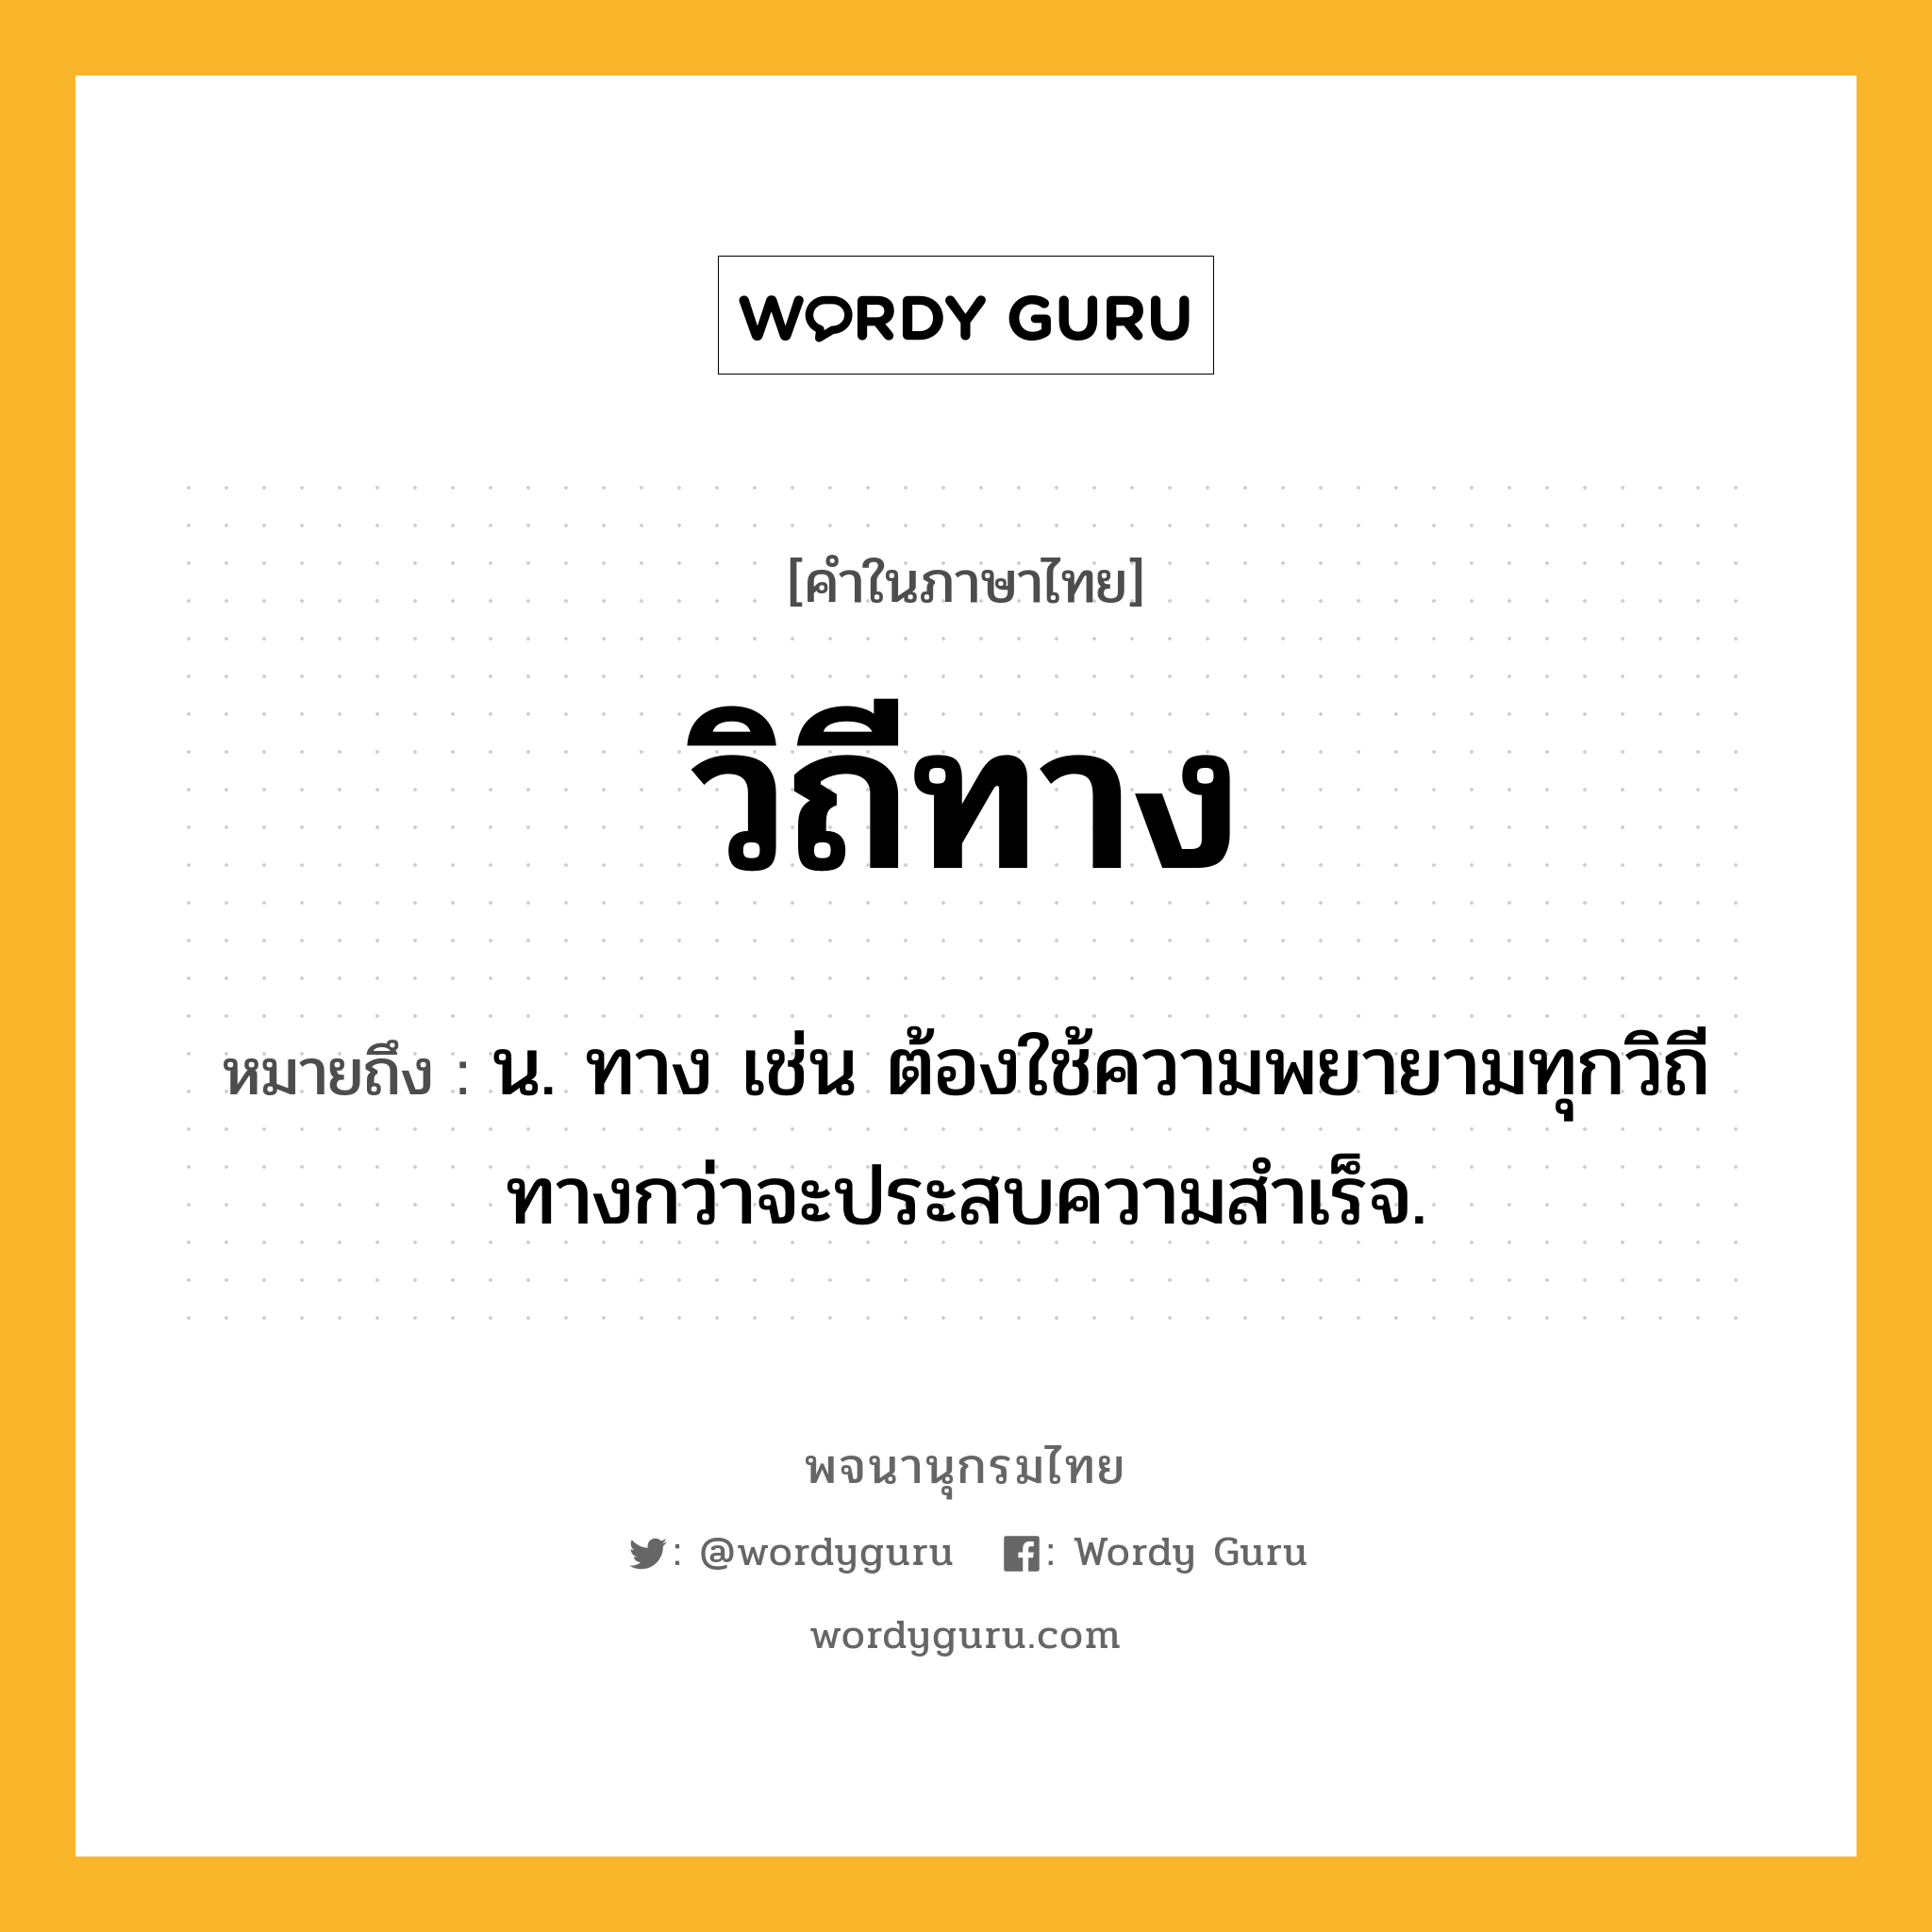 วิถีทาง หมายถึงอะไร?, คำในภาษาไทย วิถีทาง หมายถึง น. ทาง เช่น ต้องใช้ความพยายามทุกวิถีทางกว่าจะประสบความสำเร็จ.